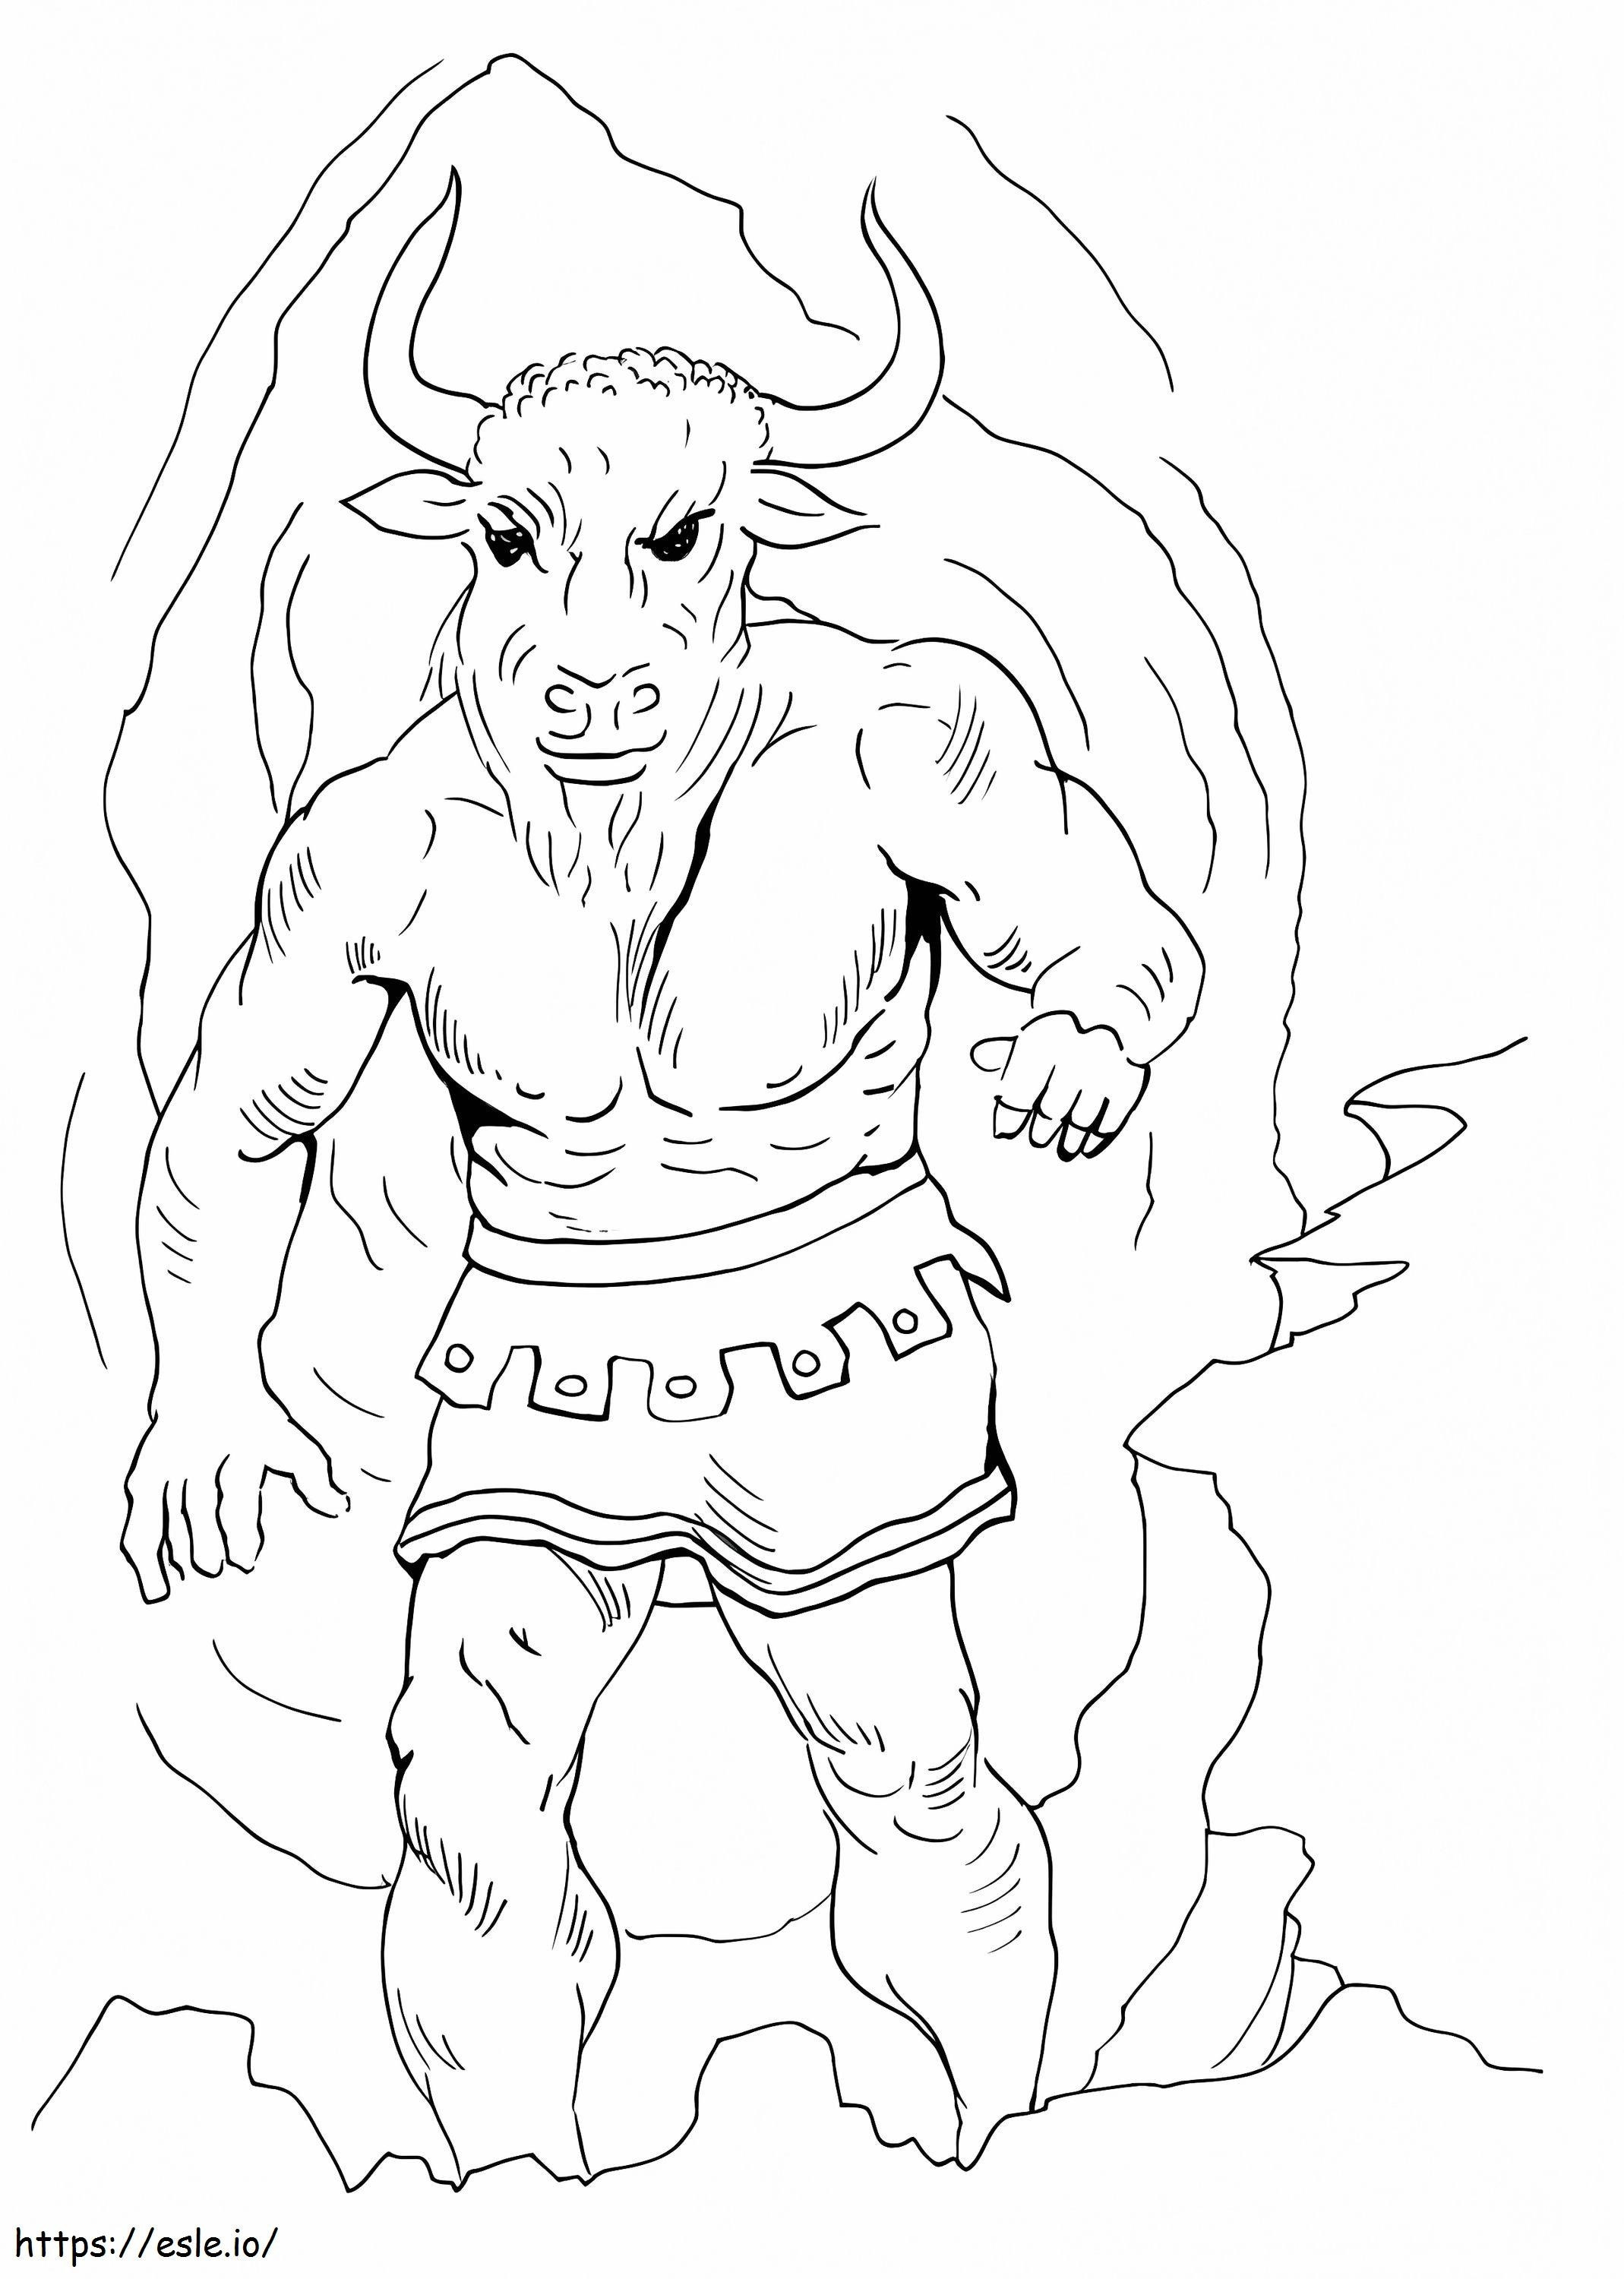 Mythischer Minotaurus ausmalbilder